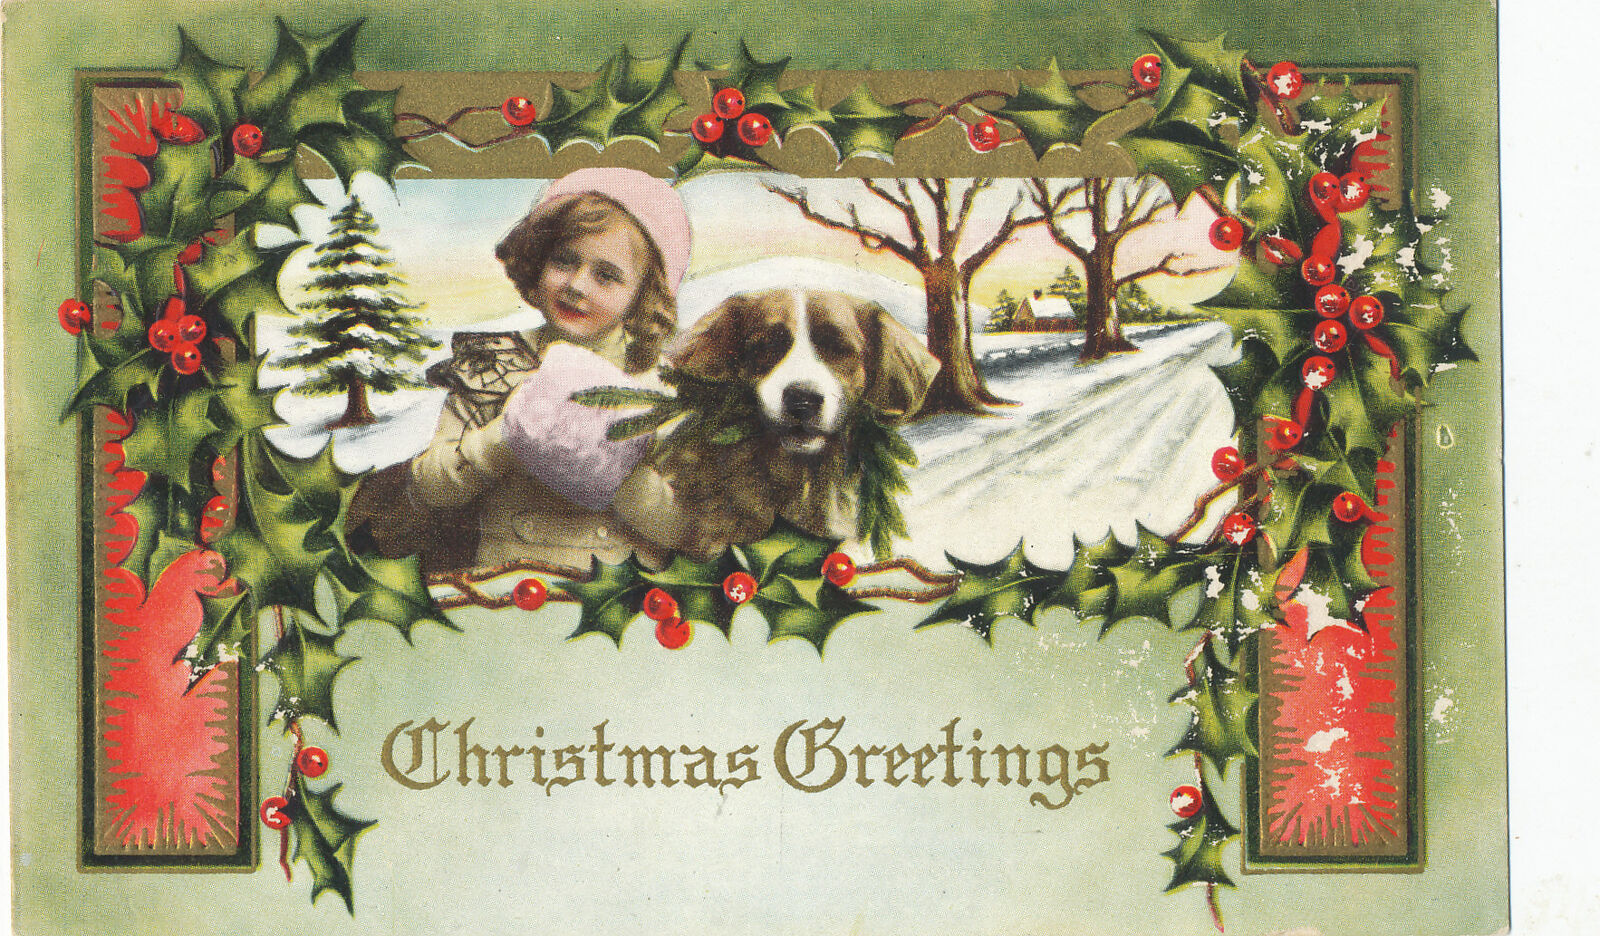 CHRISTMAS GREETINGS - Postcard 1913 - YOUNG GIRL pink MUFFLER & DOG - HOLY